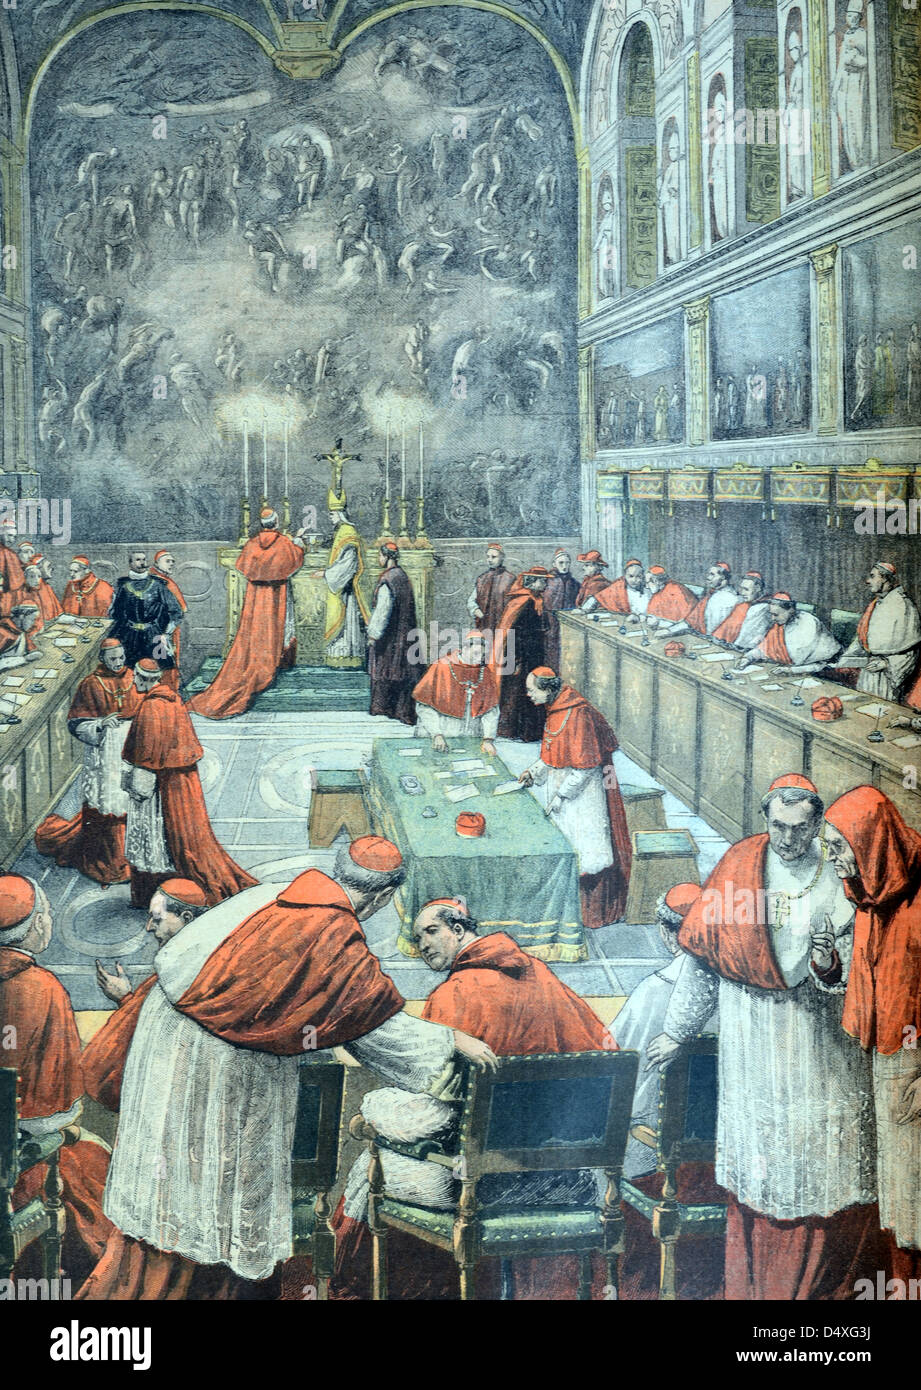 Conclave Papale o Collegio Cardinalizio nella Cappella Sistina Vaticano Roma (agosto 1903) Italia. Illustrazione o incisione vintage Foto Stock